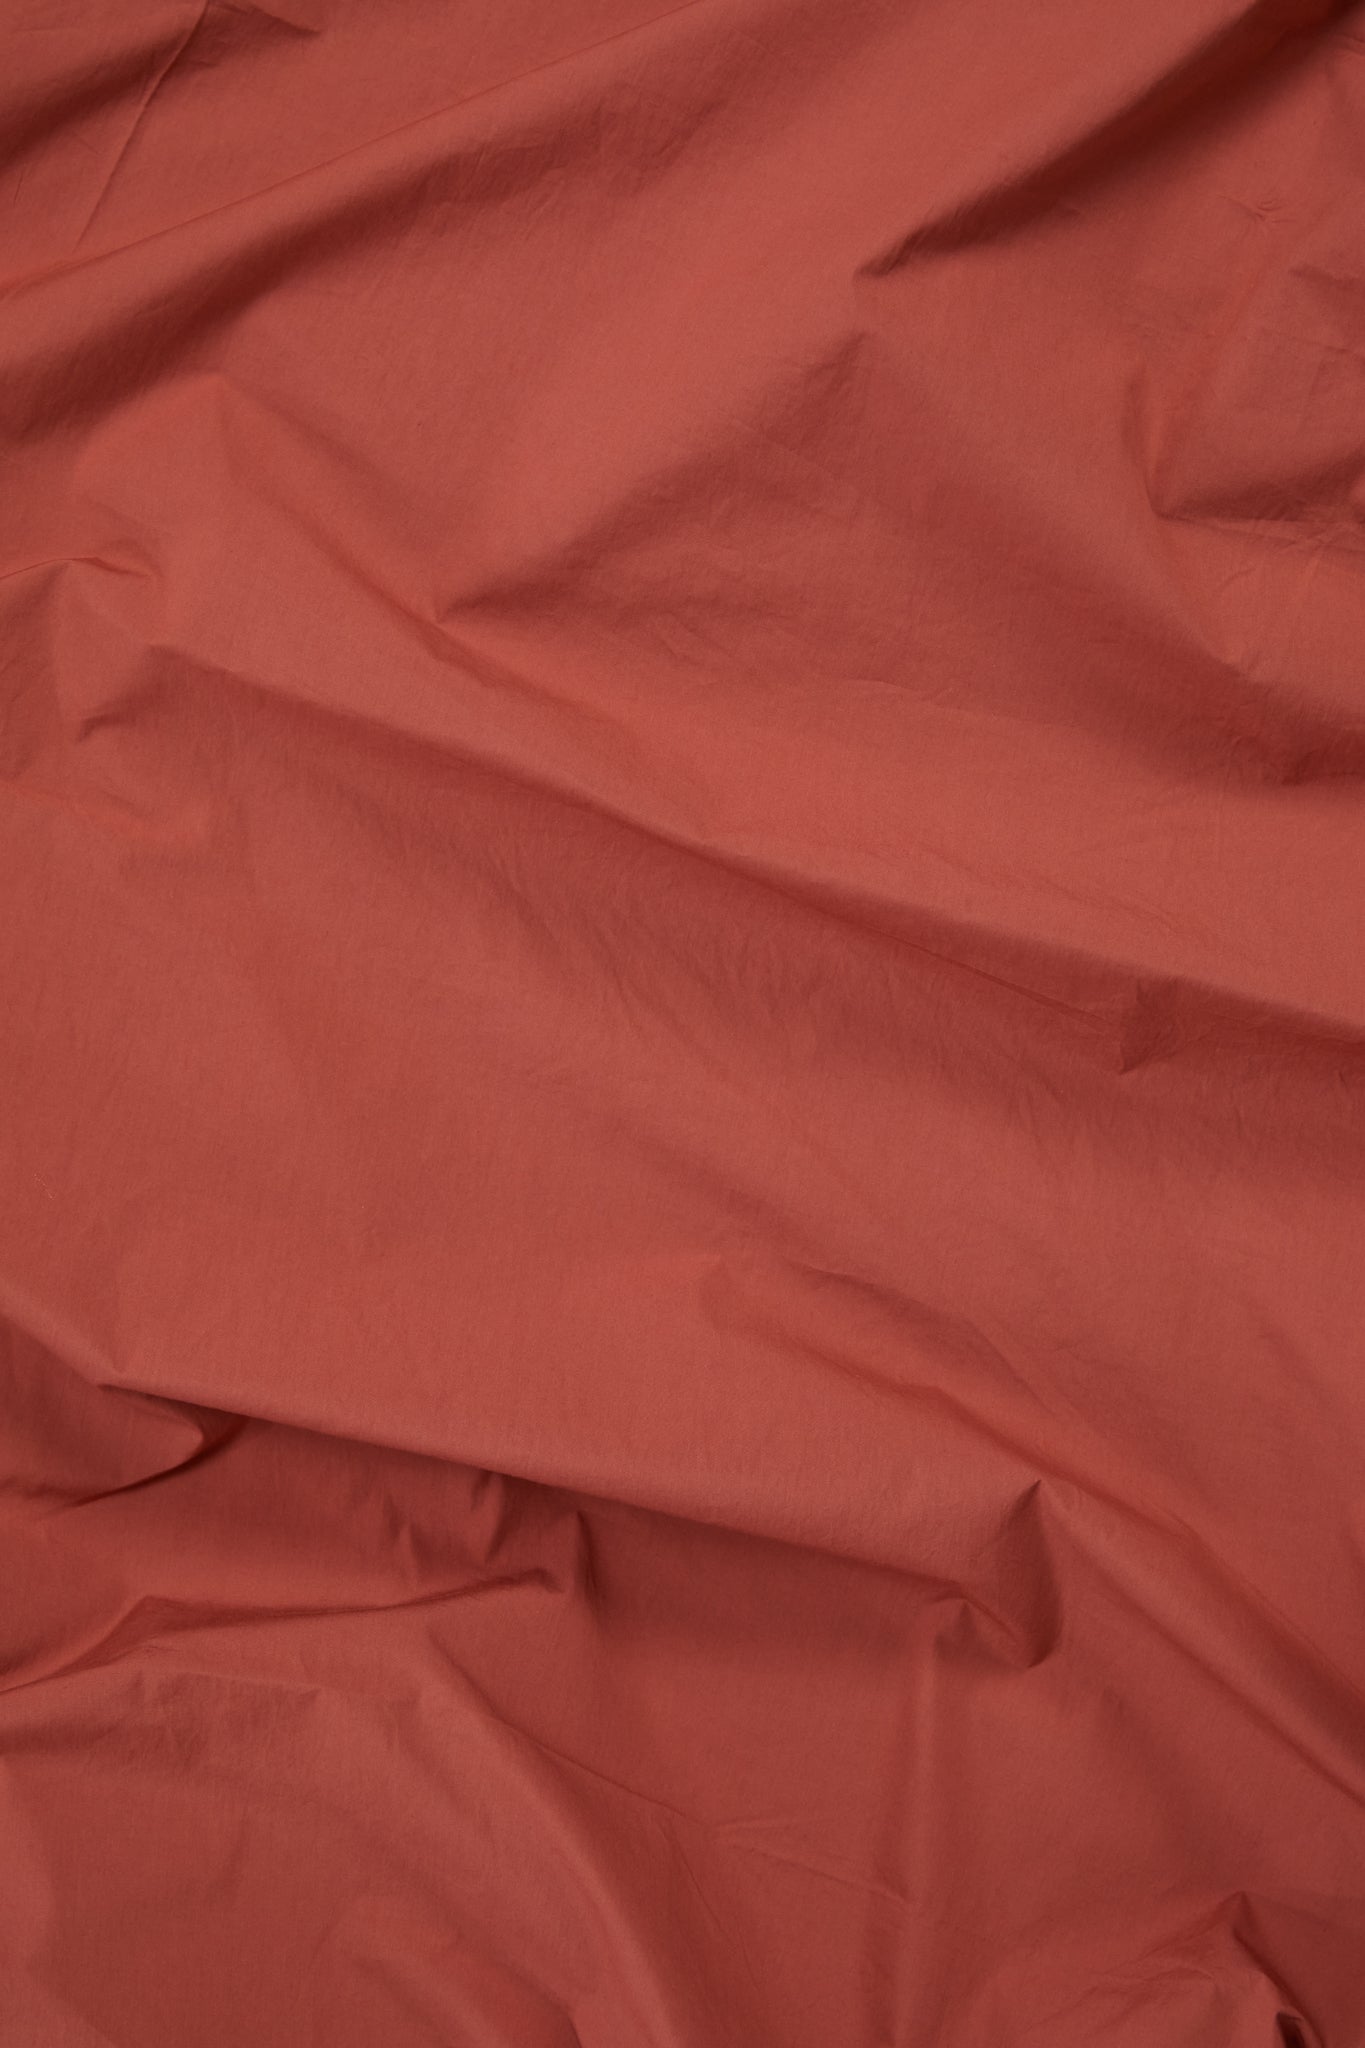 Duvet Cover in Ochre Red